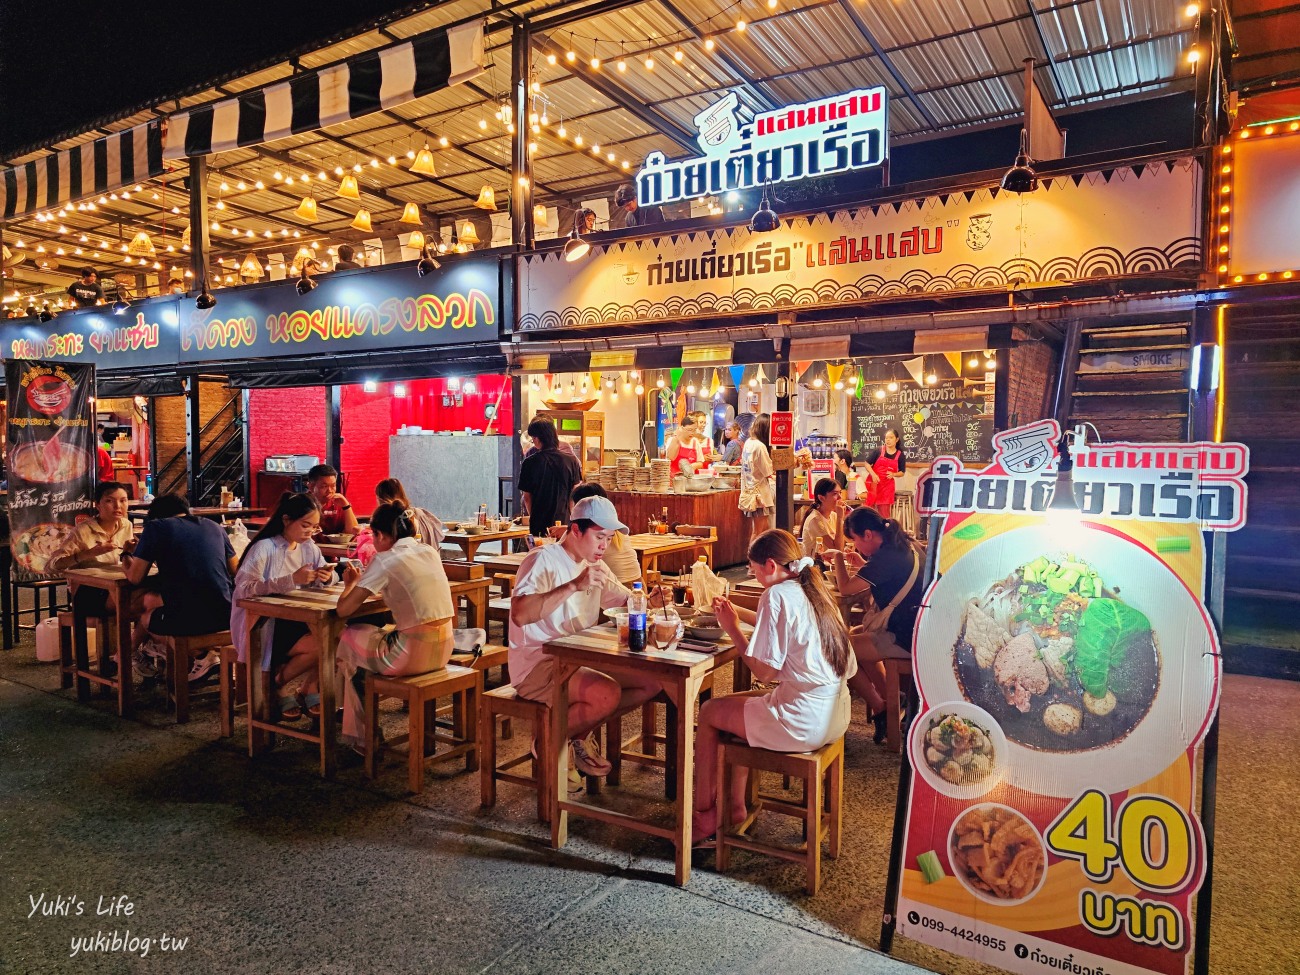 曼谷夜市推薦【席娜卡琳火車夜市】當地人愛逛的飛機夜市，便宜美食超多保證淪陷 - yukiblog.tw